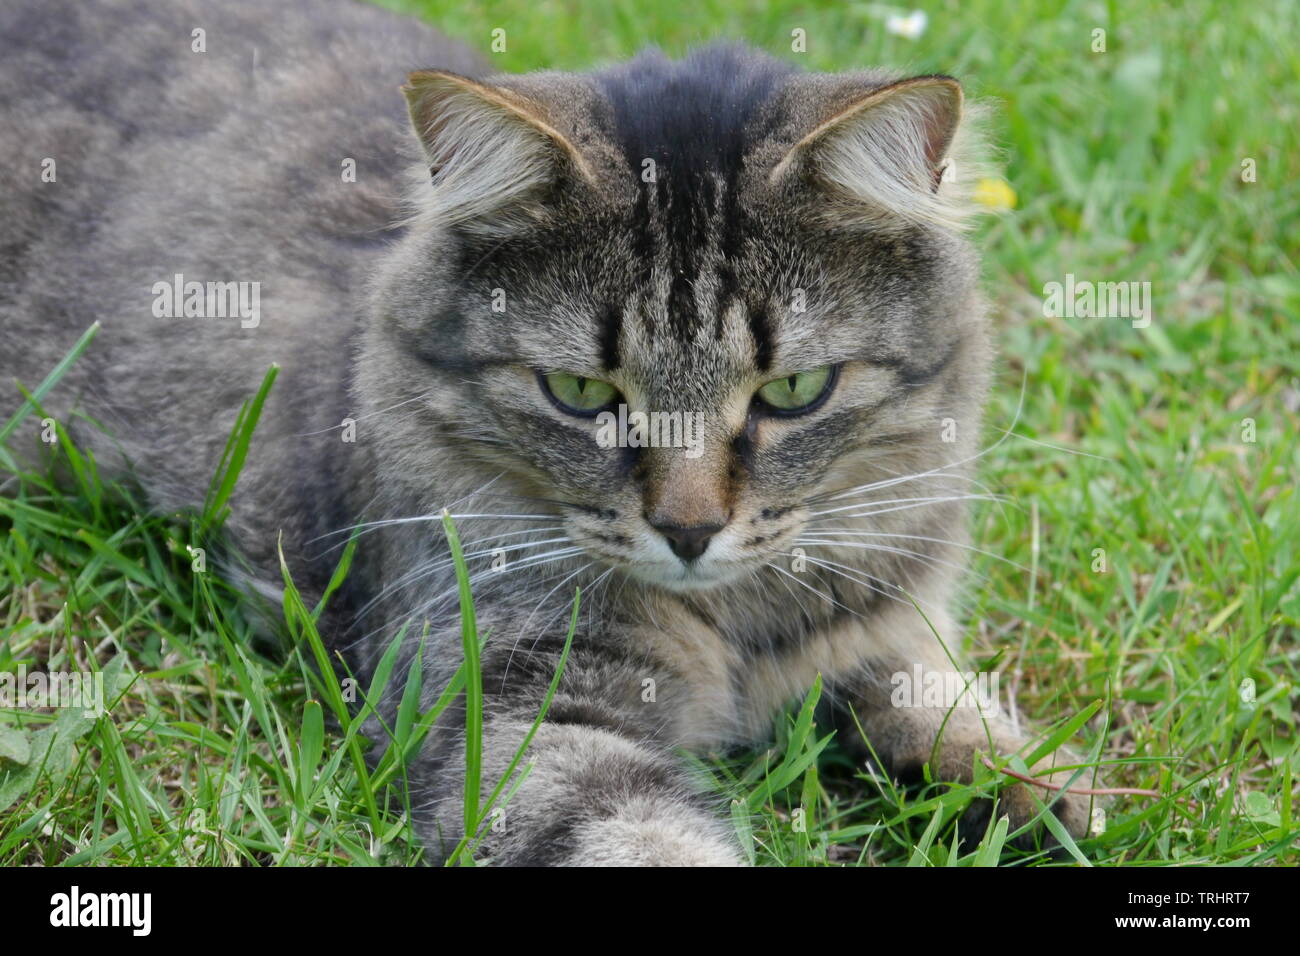 Schönen braun gemusterten Katze mit grünen Augen lügen auf Gras. Stockfoto